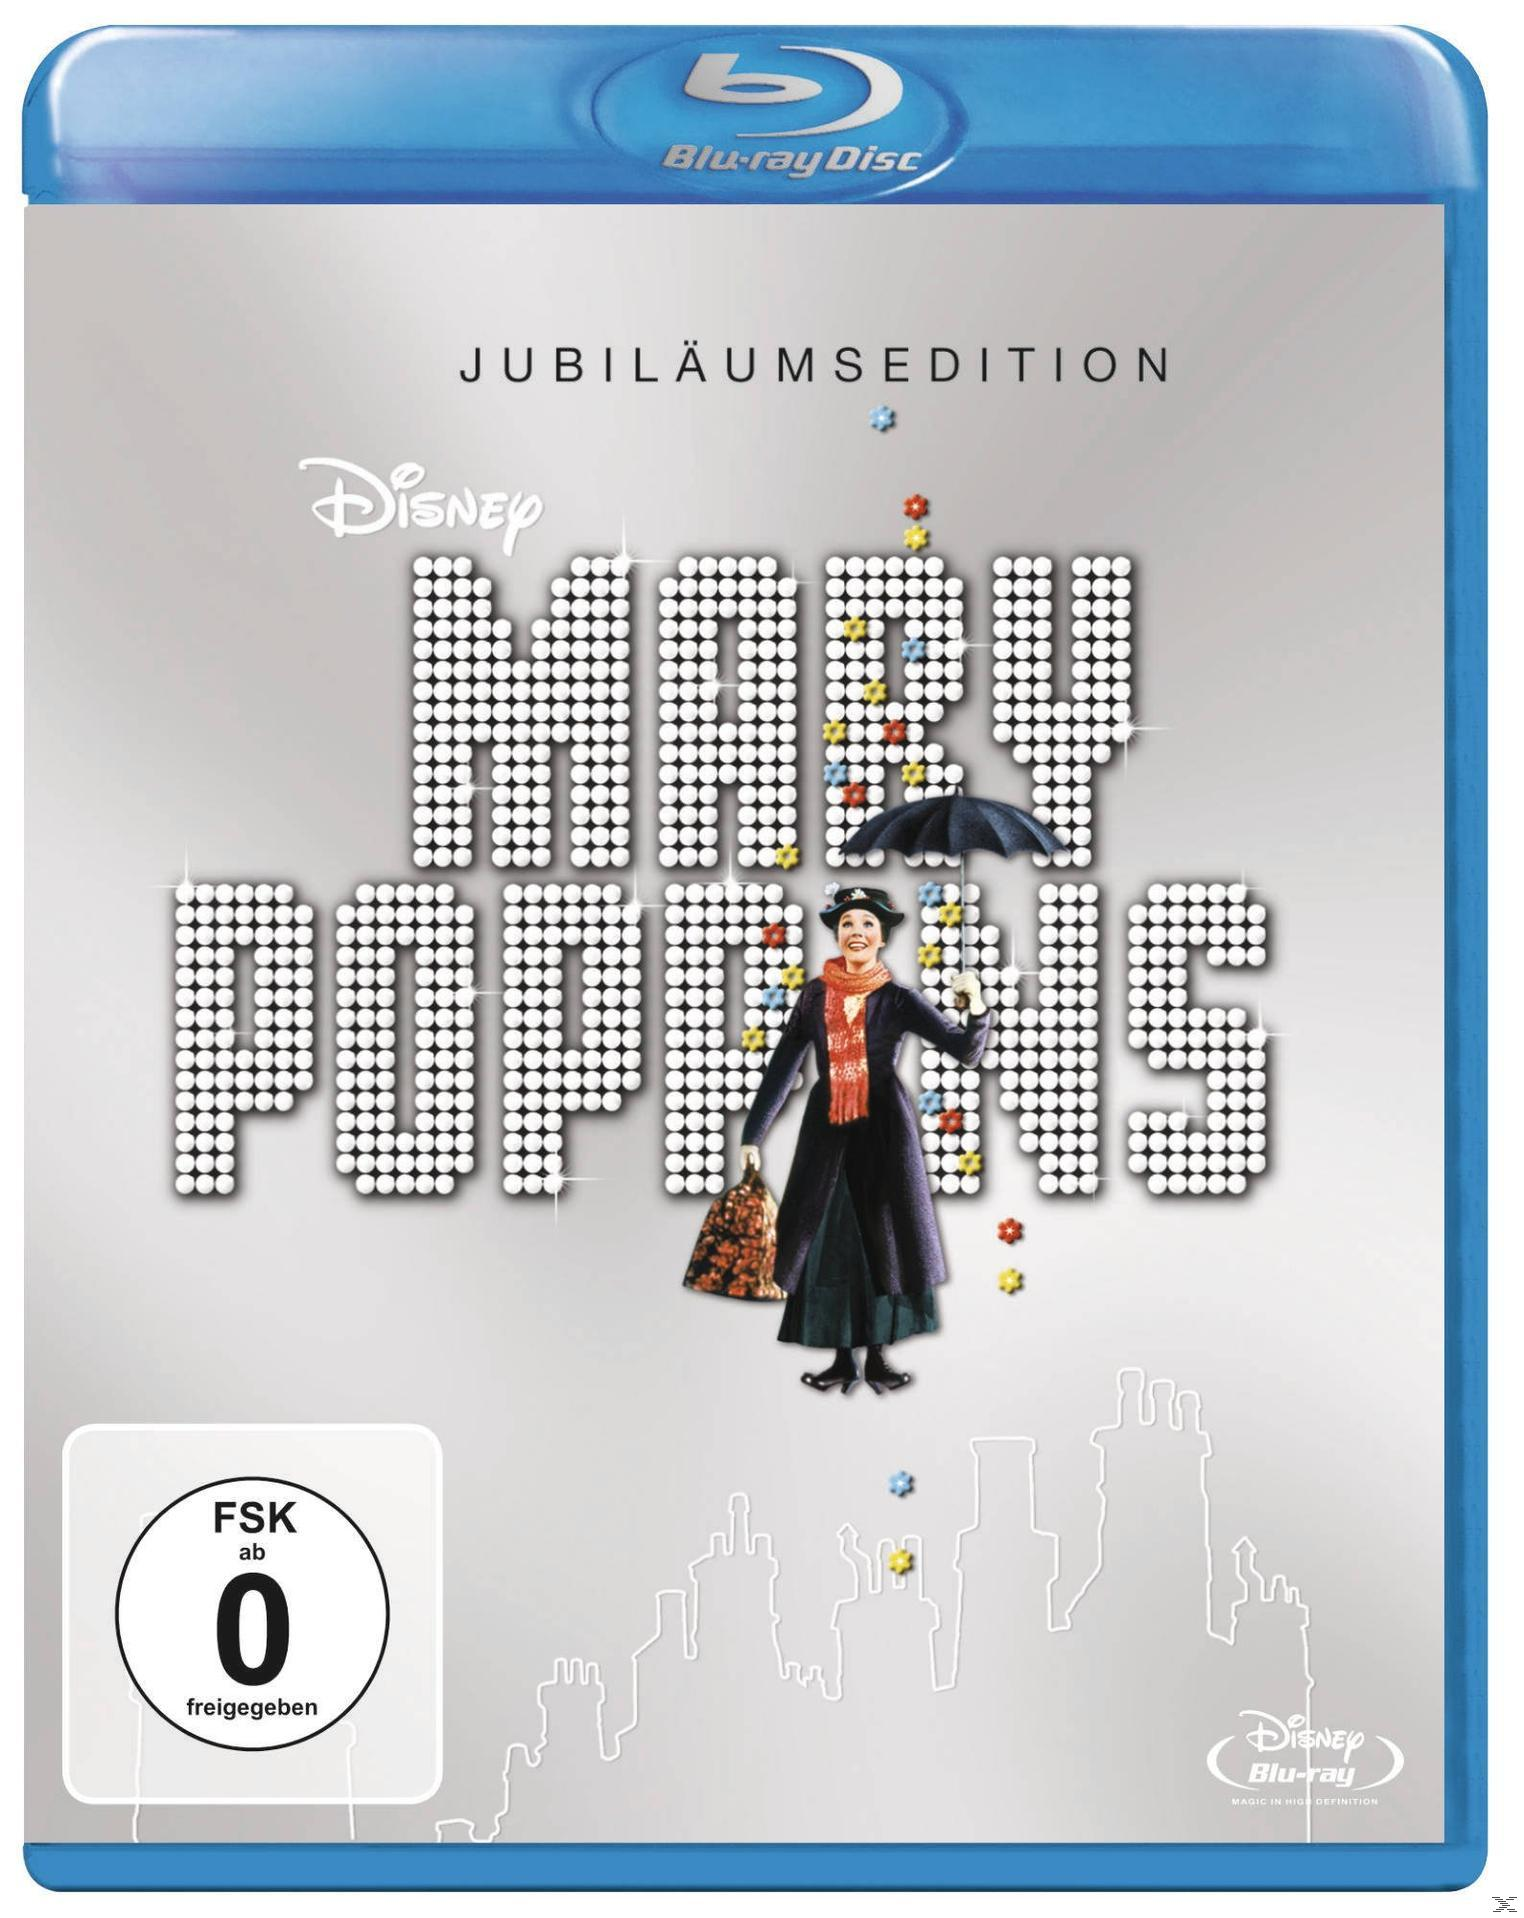 Mary Blu-ray Poppins